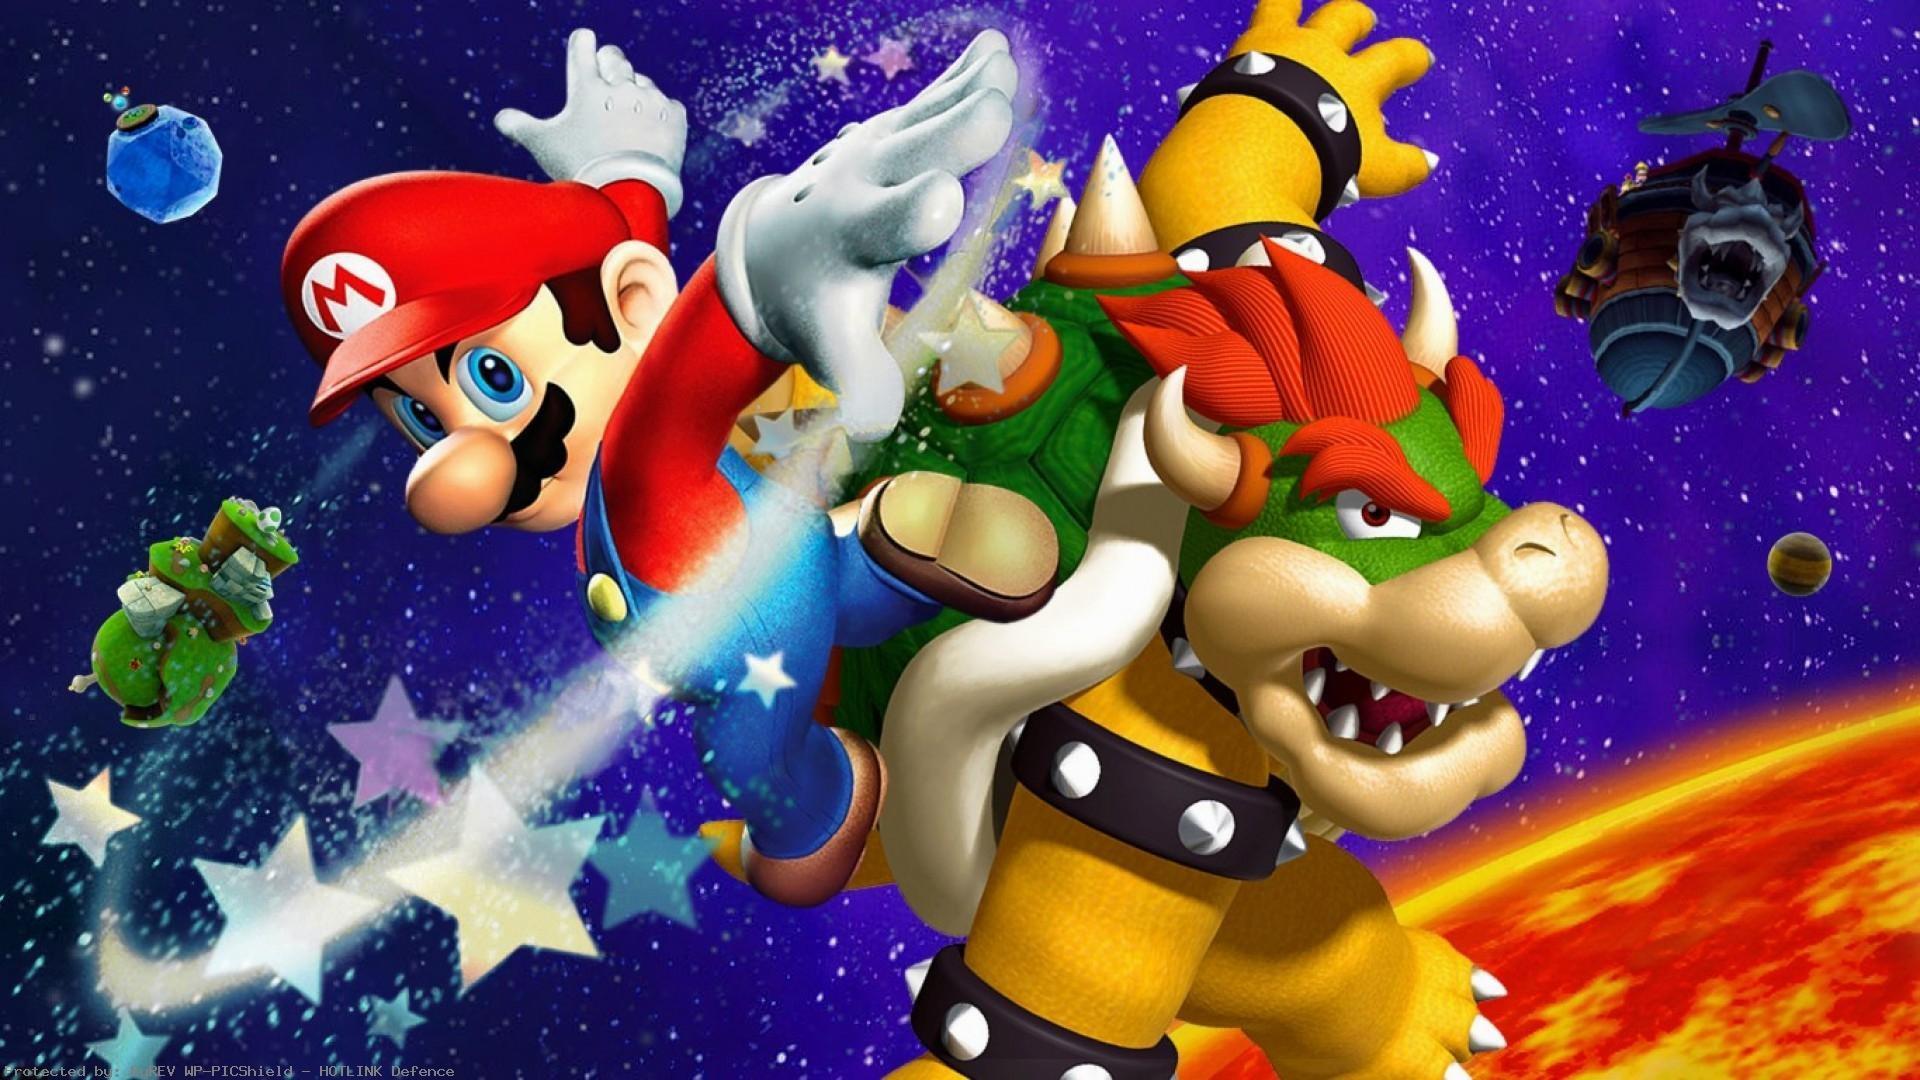 Mario bros theme. Super Mario Galaxy 3. Bowser super Mario Galaxy 2. Super Mario Galaxy Bowser. Дракон Боузер из Марио.